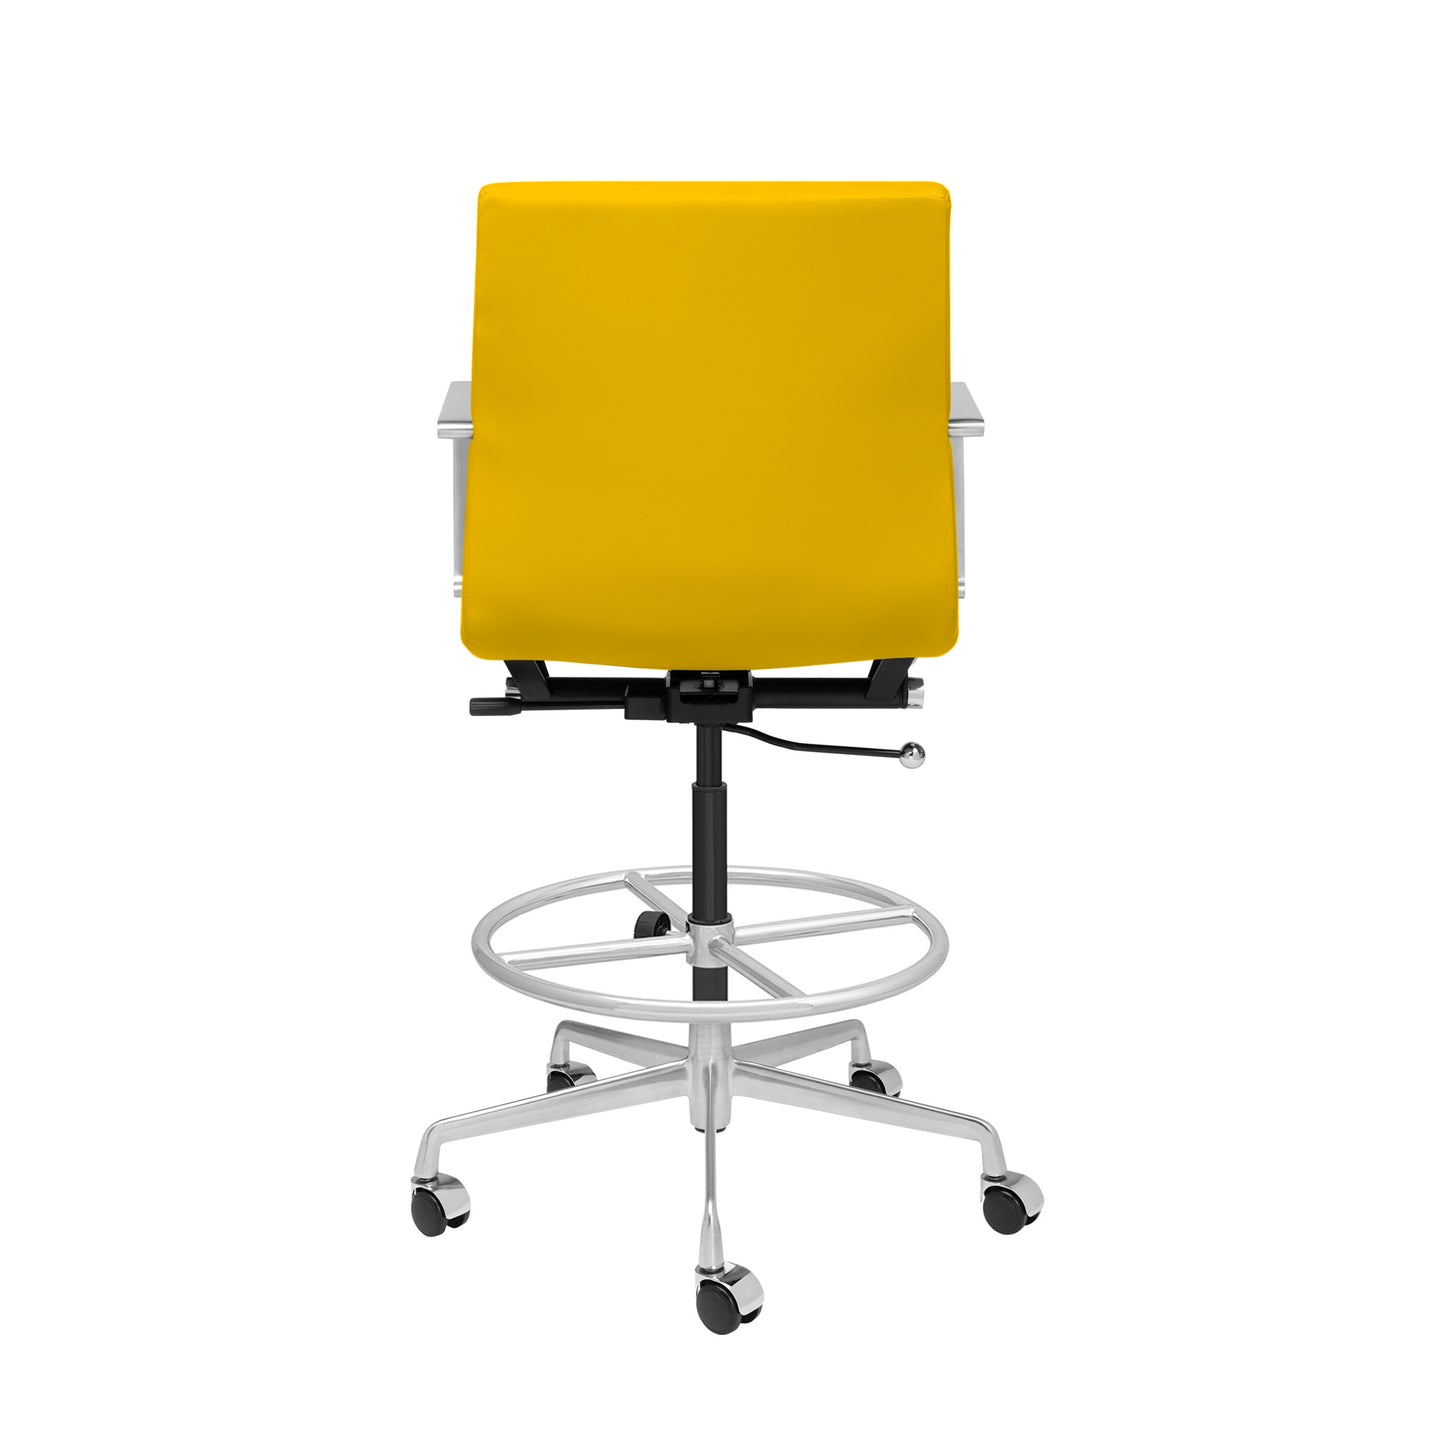 SHIPS MAY 17TH - SOHO II Ribbed Drafting Chair (Yellow)